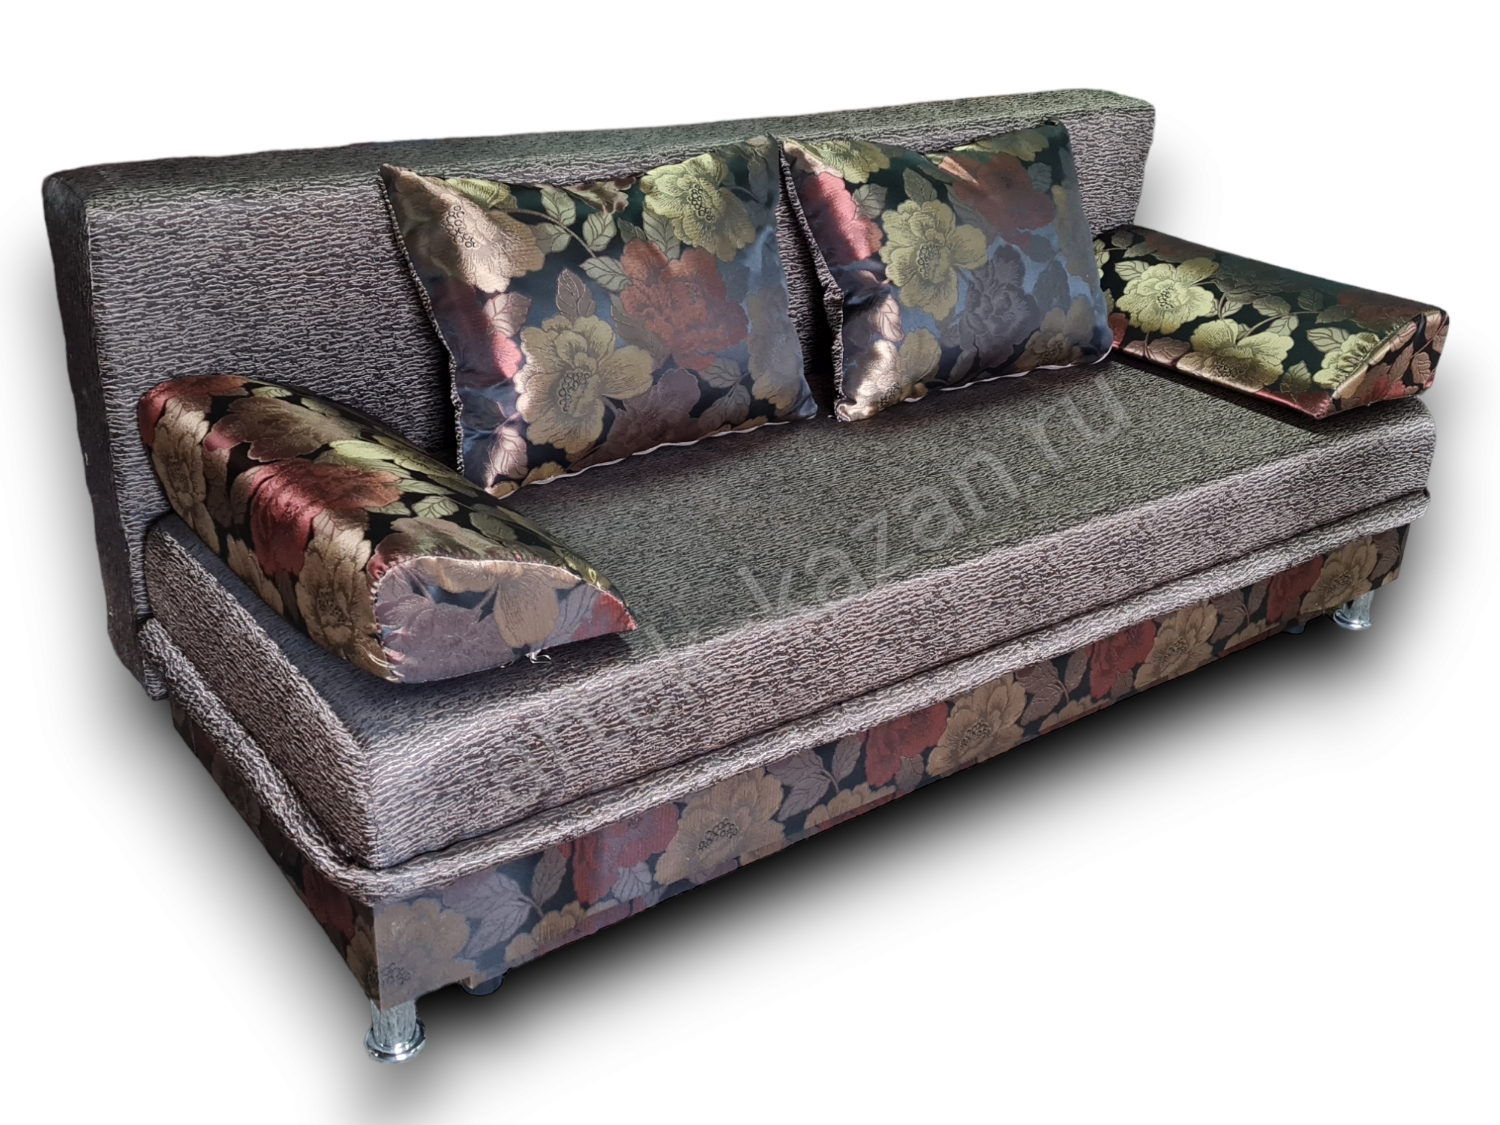 диван еврокнижка Эконом фото № 145. Купить недорогой диван по низкой цене от производителя можно у нас.